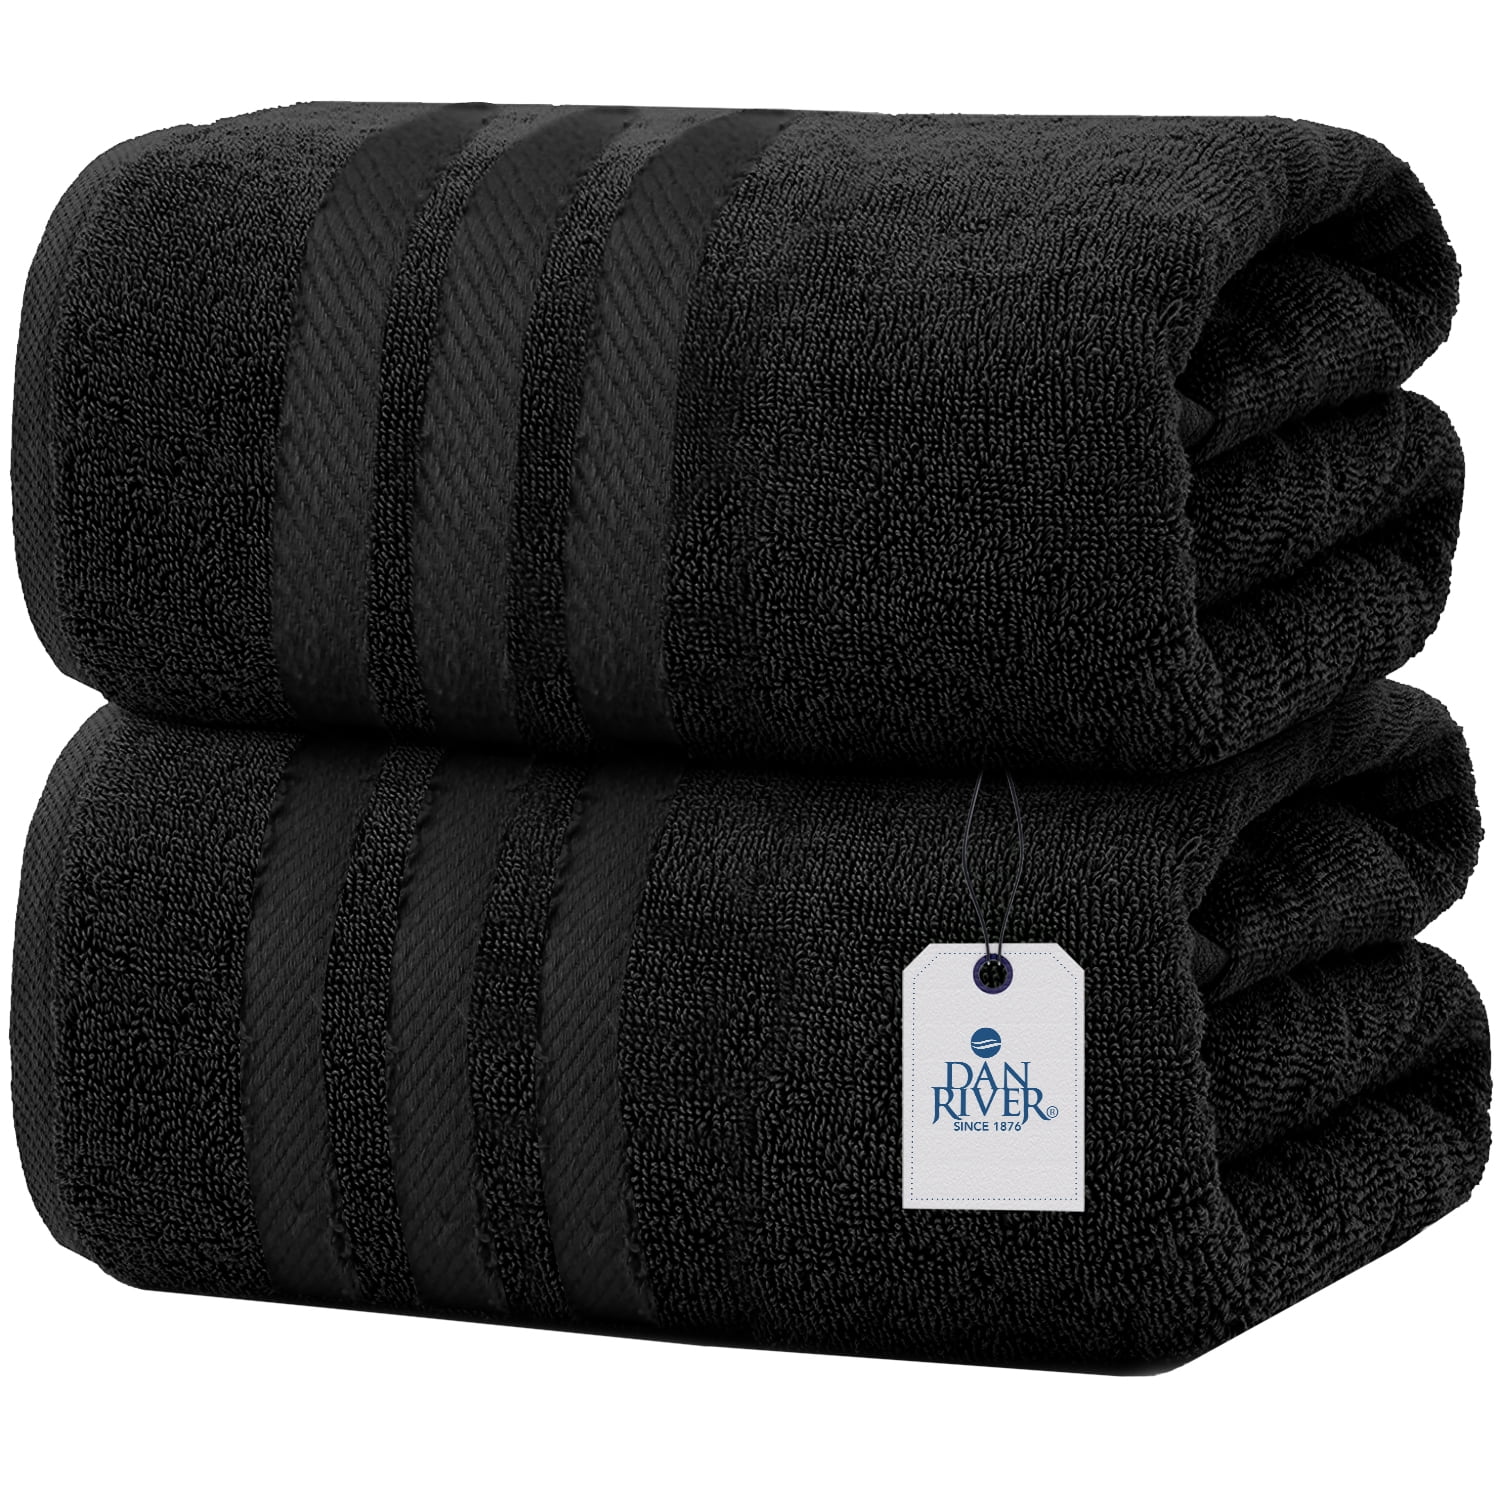 2pc Luxury Cotton Bath Towels Set Black - Yorkshire Home